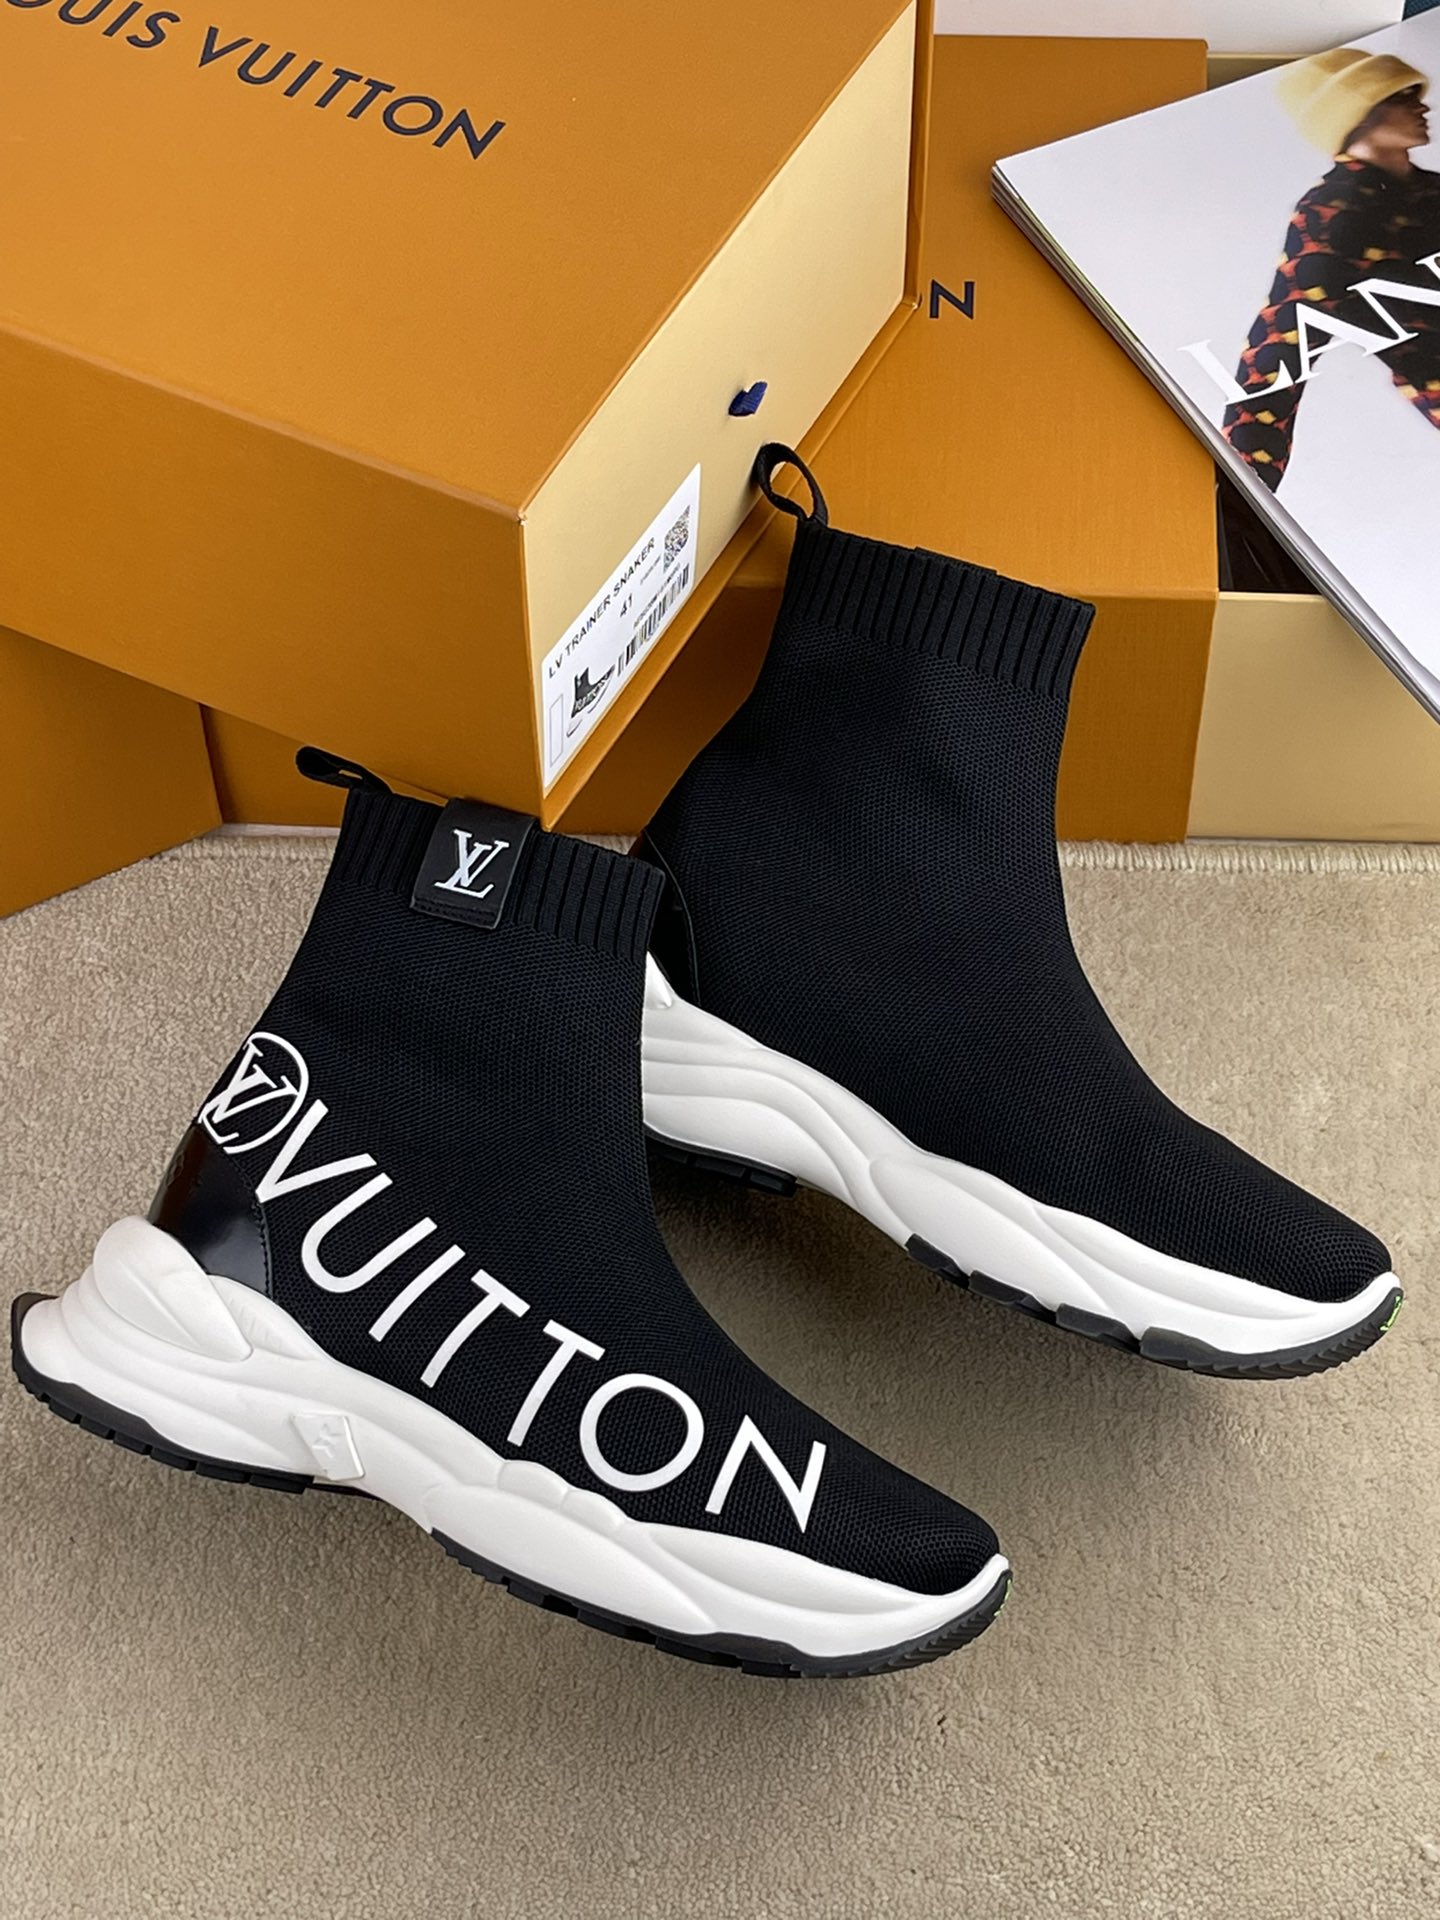 Louis Vuitton Run 55 Sneaker Boot For Men # 263020, cheap Louis Vuitton Boots, only $89!